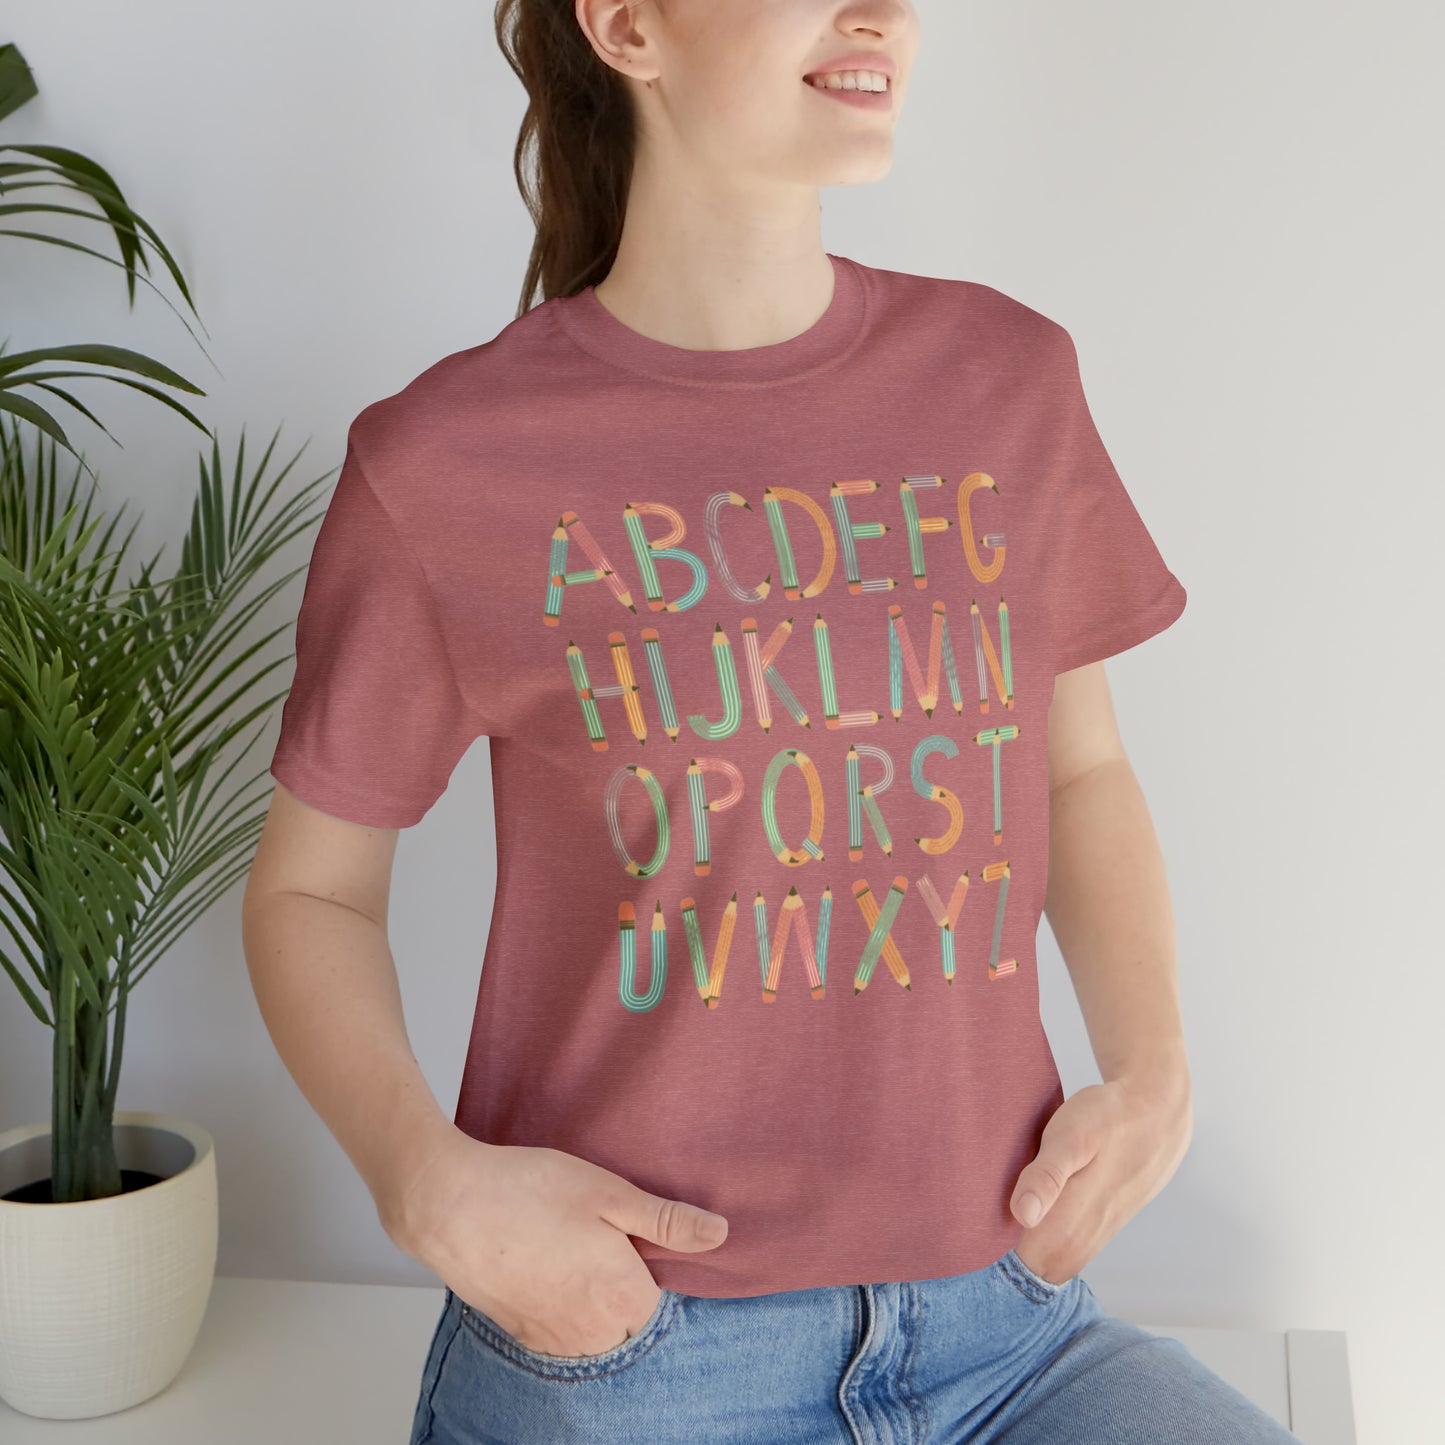 Preschool Teacher Shirt, Alphabet Shirt, ABCD Shirt, Kindergarten Teacher Shirt, Cute Teacher Shirt, T362